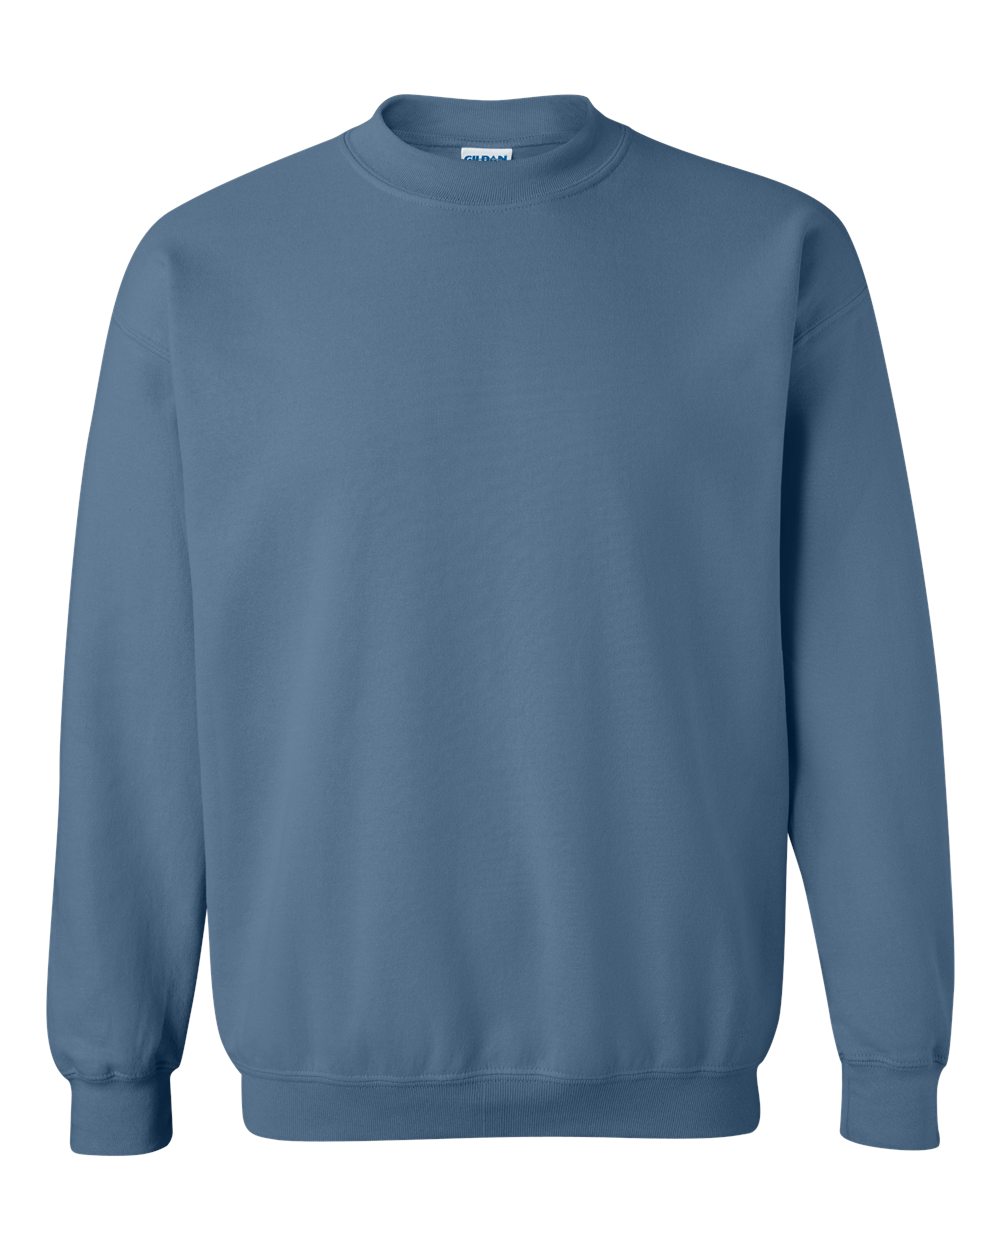 Gildan Crewneck Sweatshirt (18000) in Indigo Blue